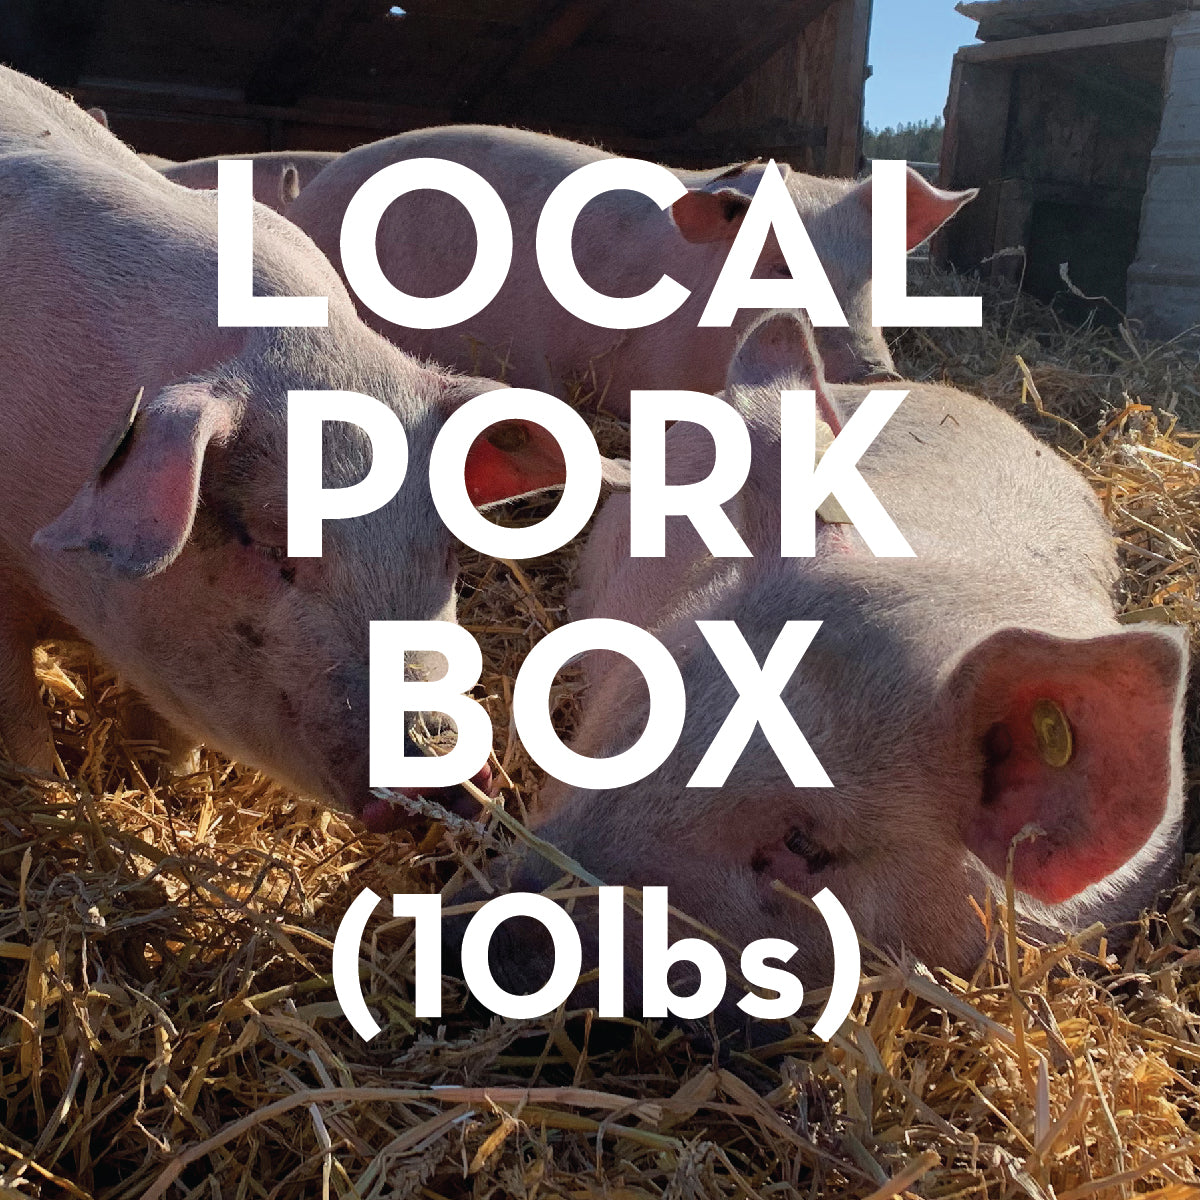 Truly Local 10lb Pork Box